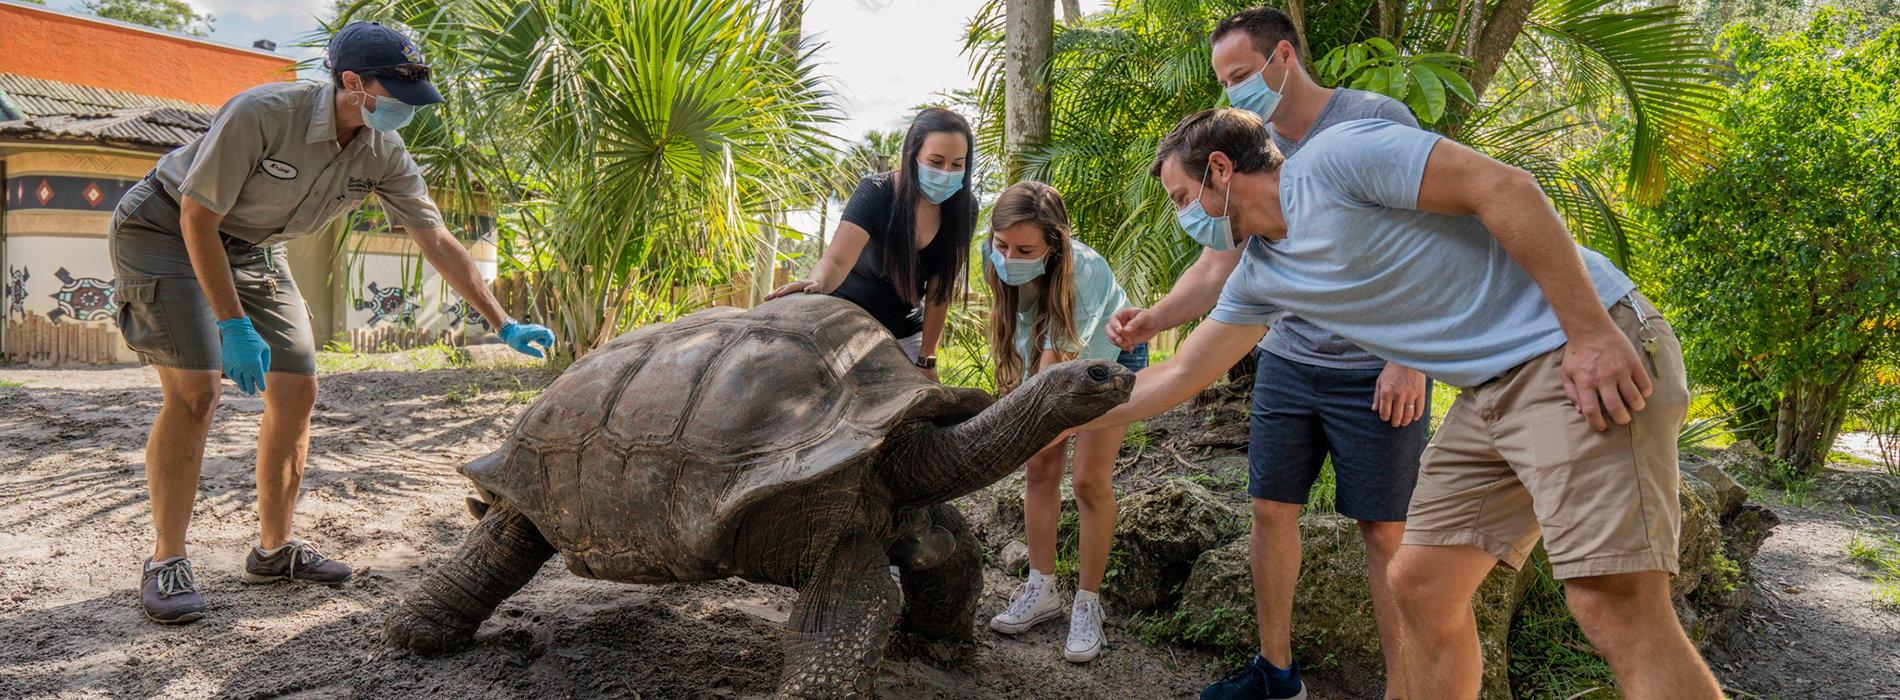 Aldabra Tour at Busch Gardens Tampa Bay